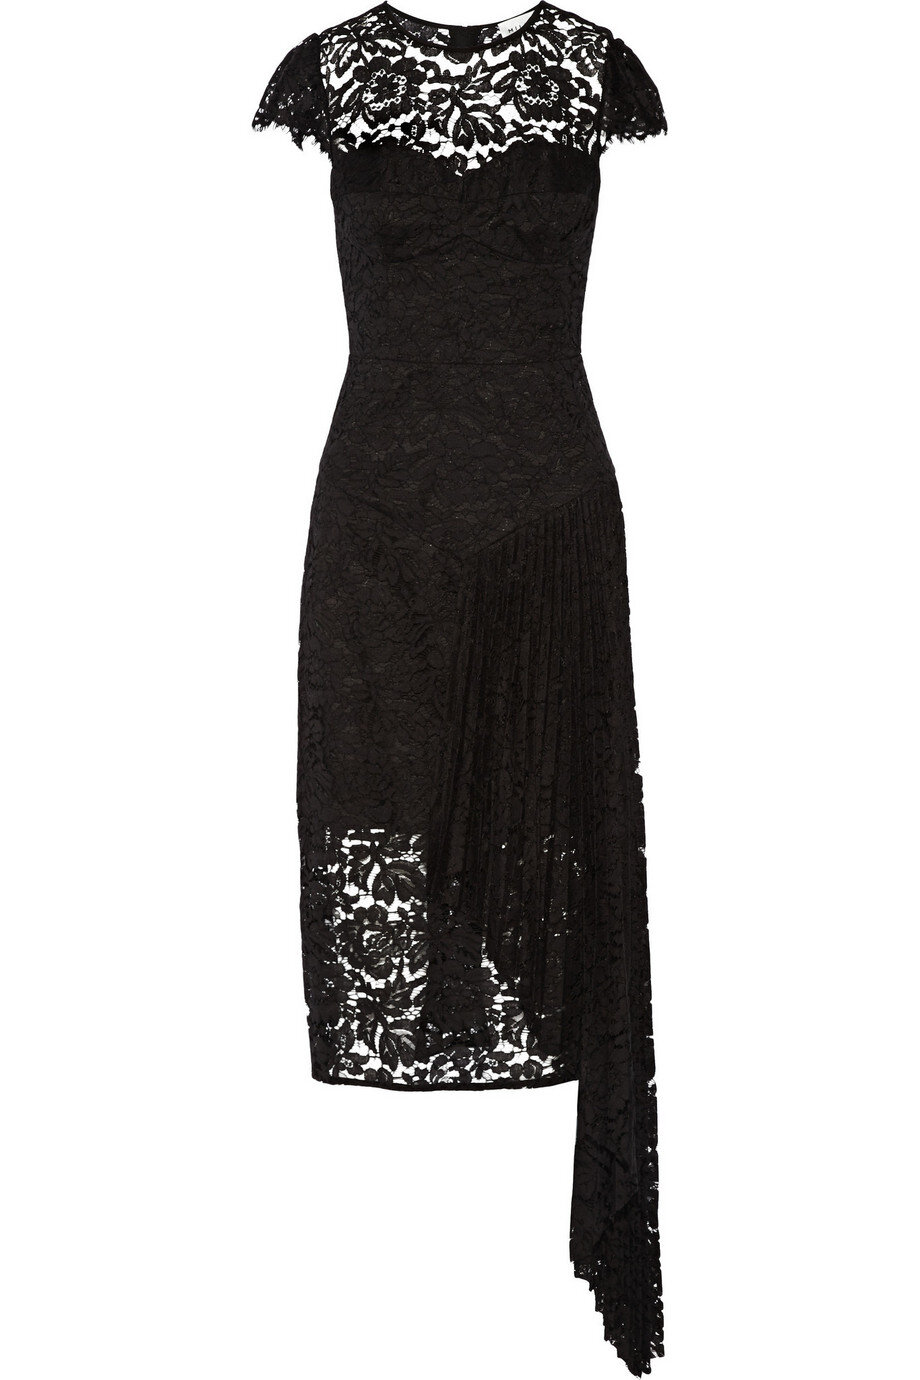 Milly Margaret Asymmetrical Lace Dress in Black.jpg